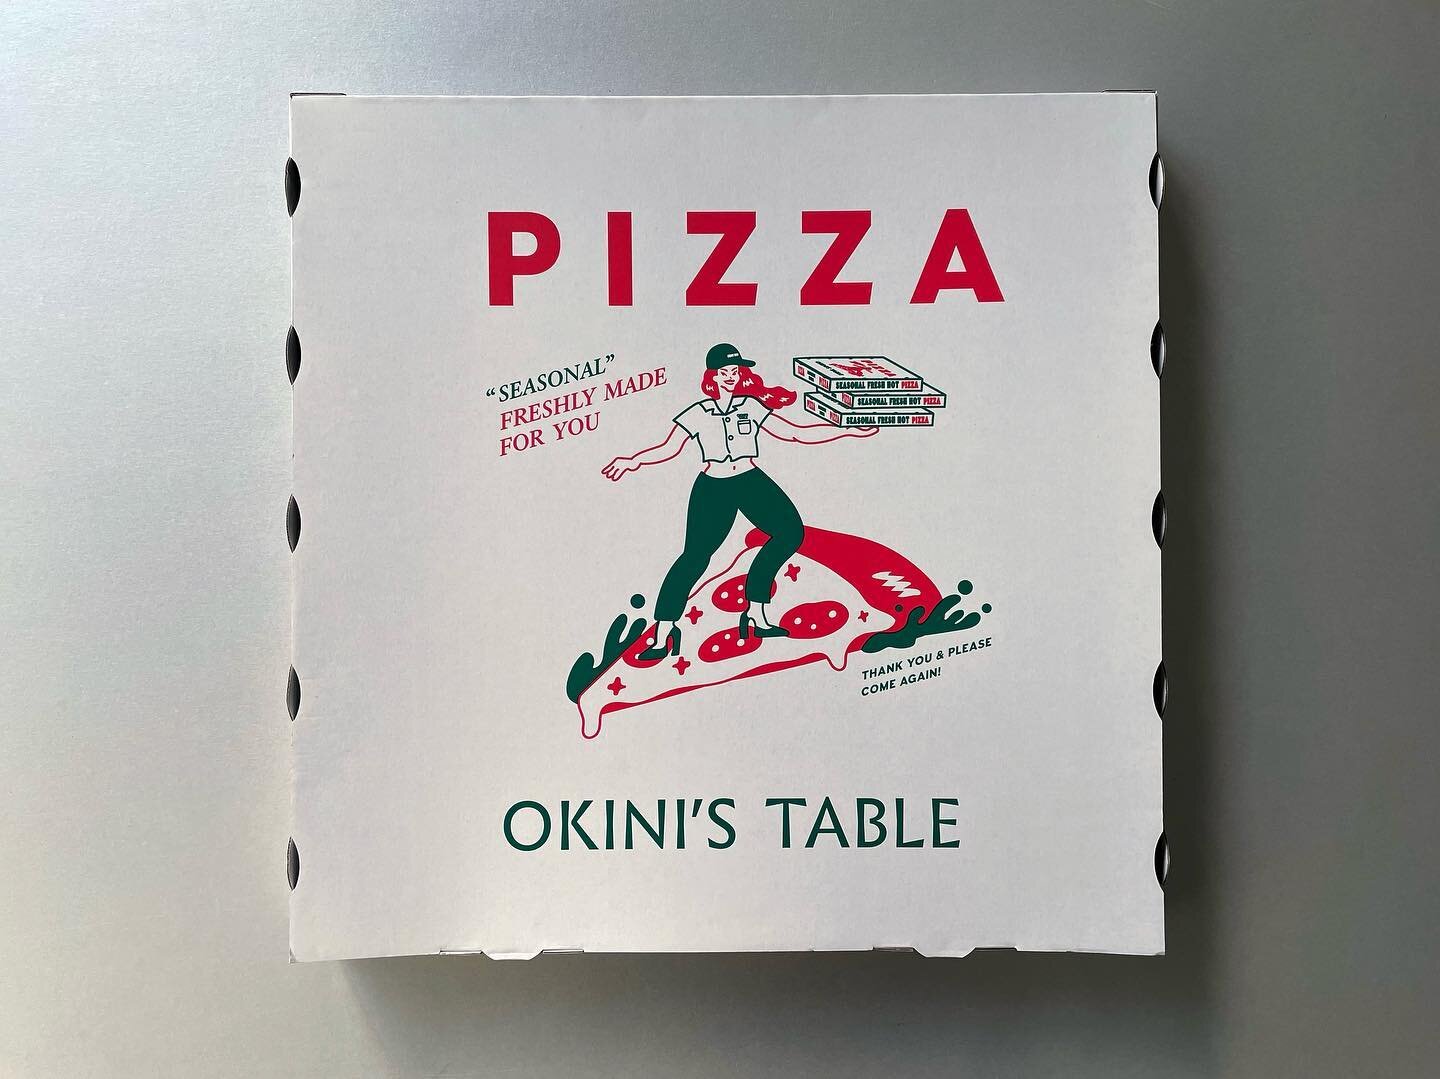 ⁡
MARKET351のピザボックス。
直径50cmのアメリカンサイズのピザ専用です。
キュートなイラストはtoyameg(@_toyameg_ )さんのもの。
⁡
⁡
#market351
#ららぽーと福岡 
#packagedesign 
#pizzabox 
#clakdesign